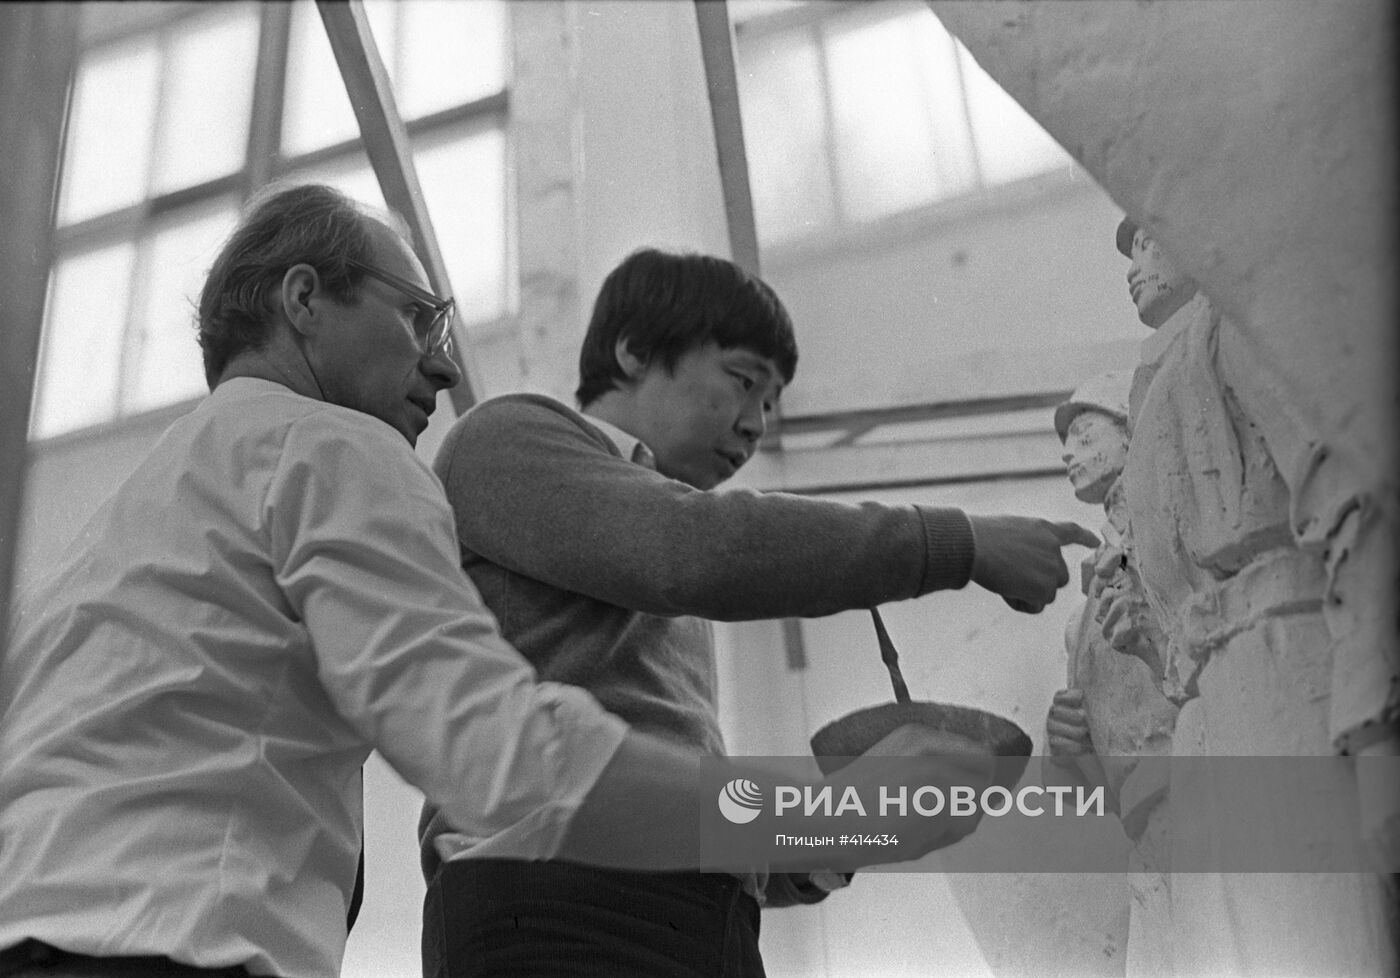 Скульпторы Амгалан Нэвэгмид и Александр Бурганов